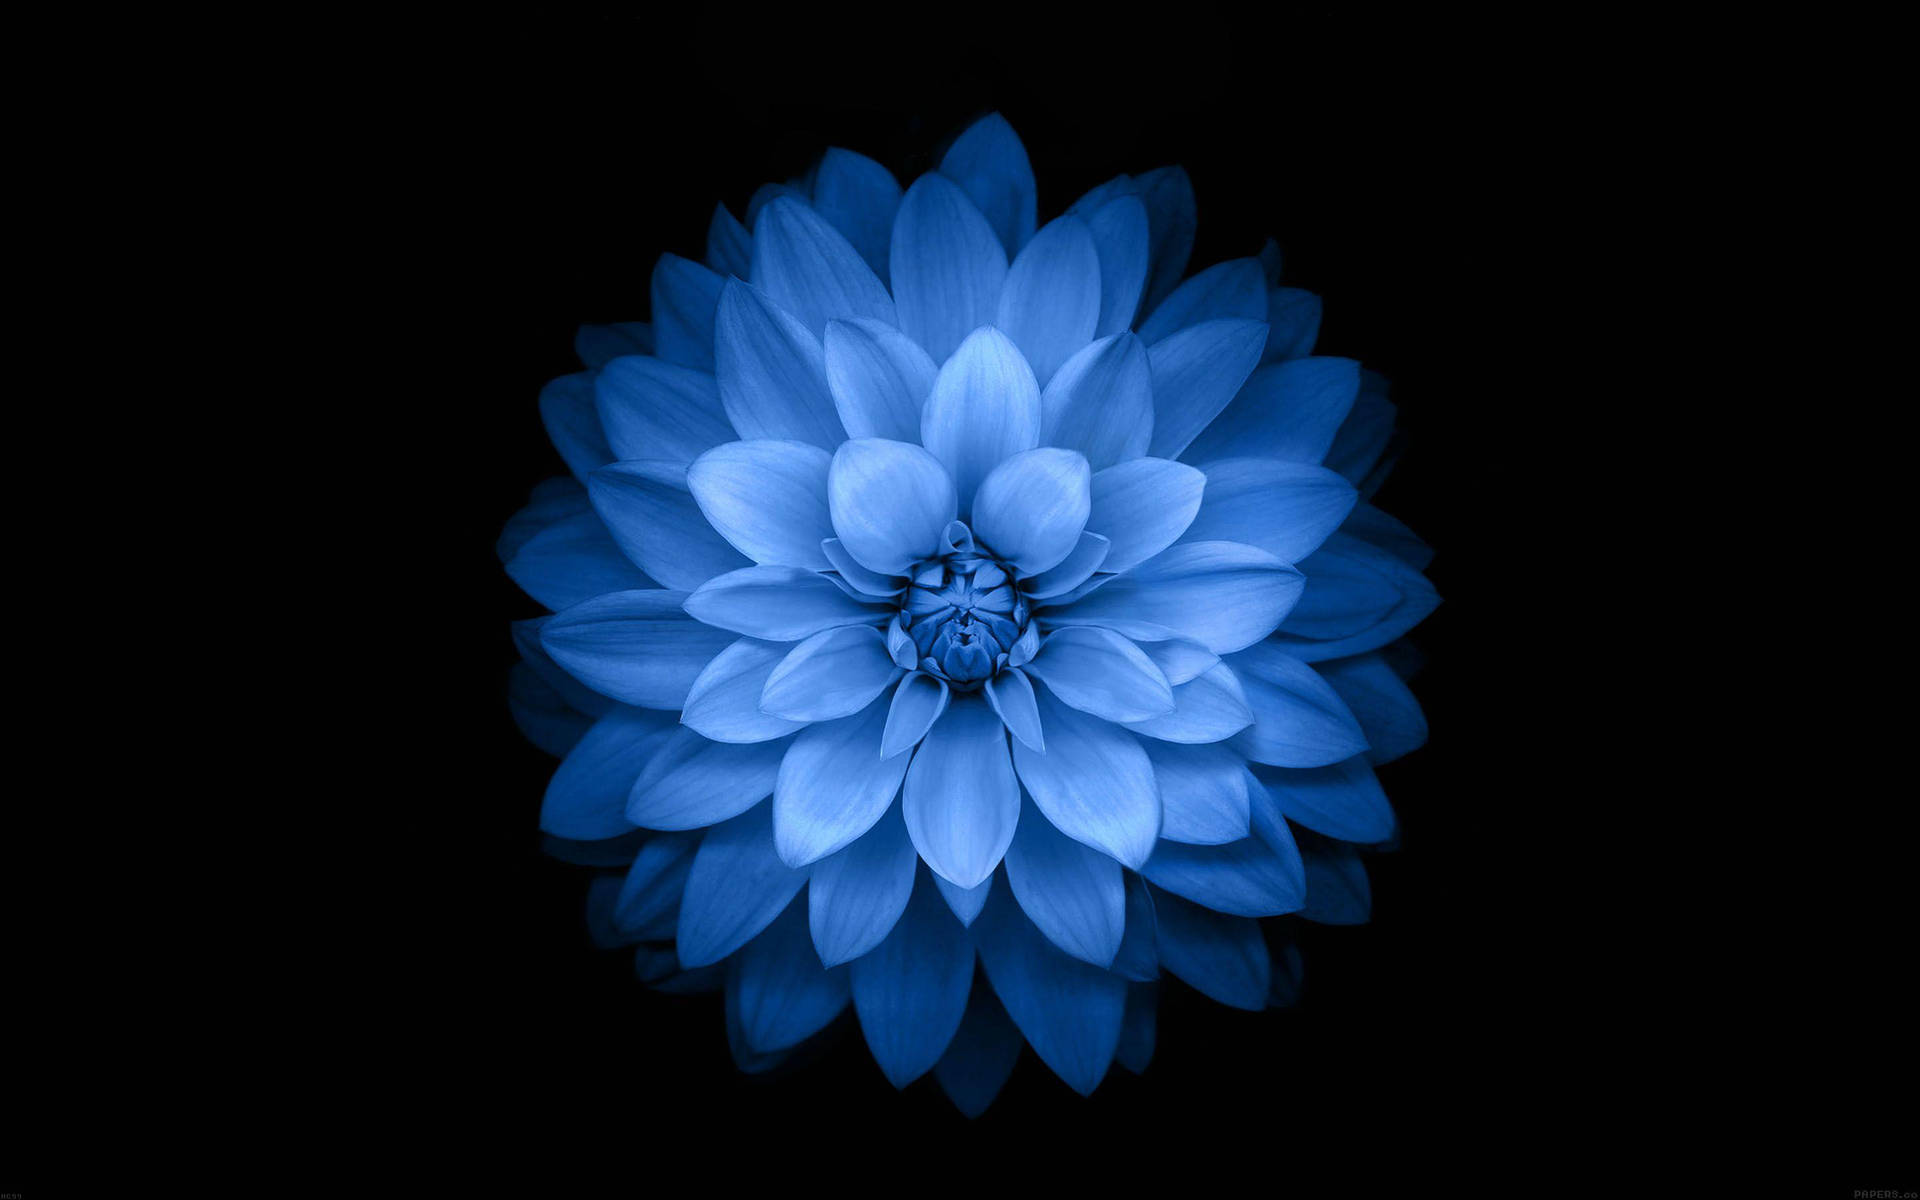 Dark Blue Aesthetic Giant Flower